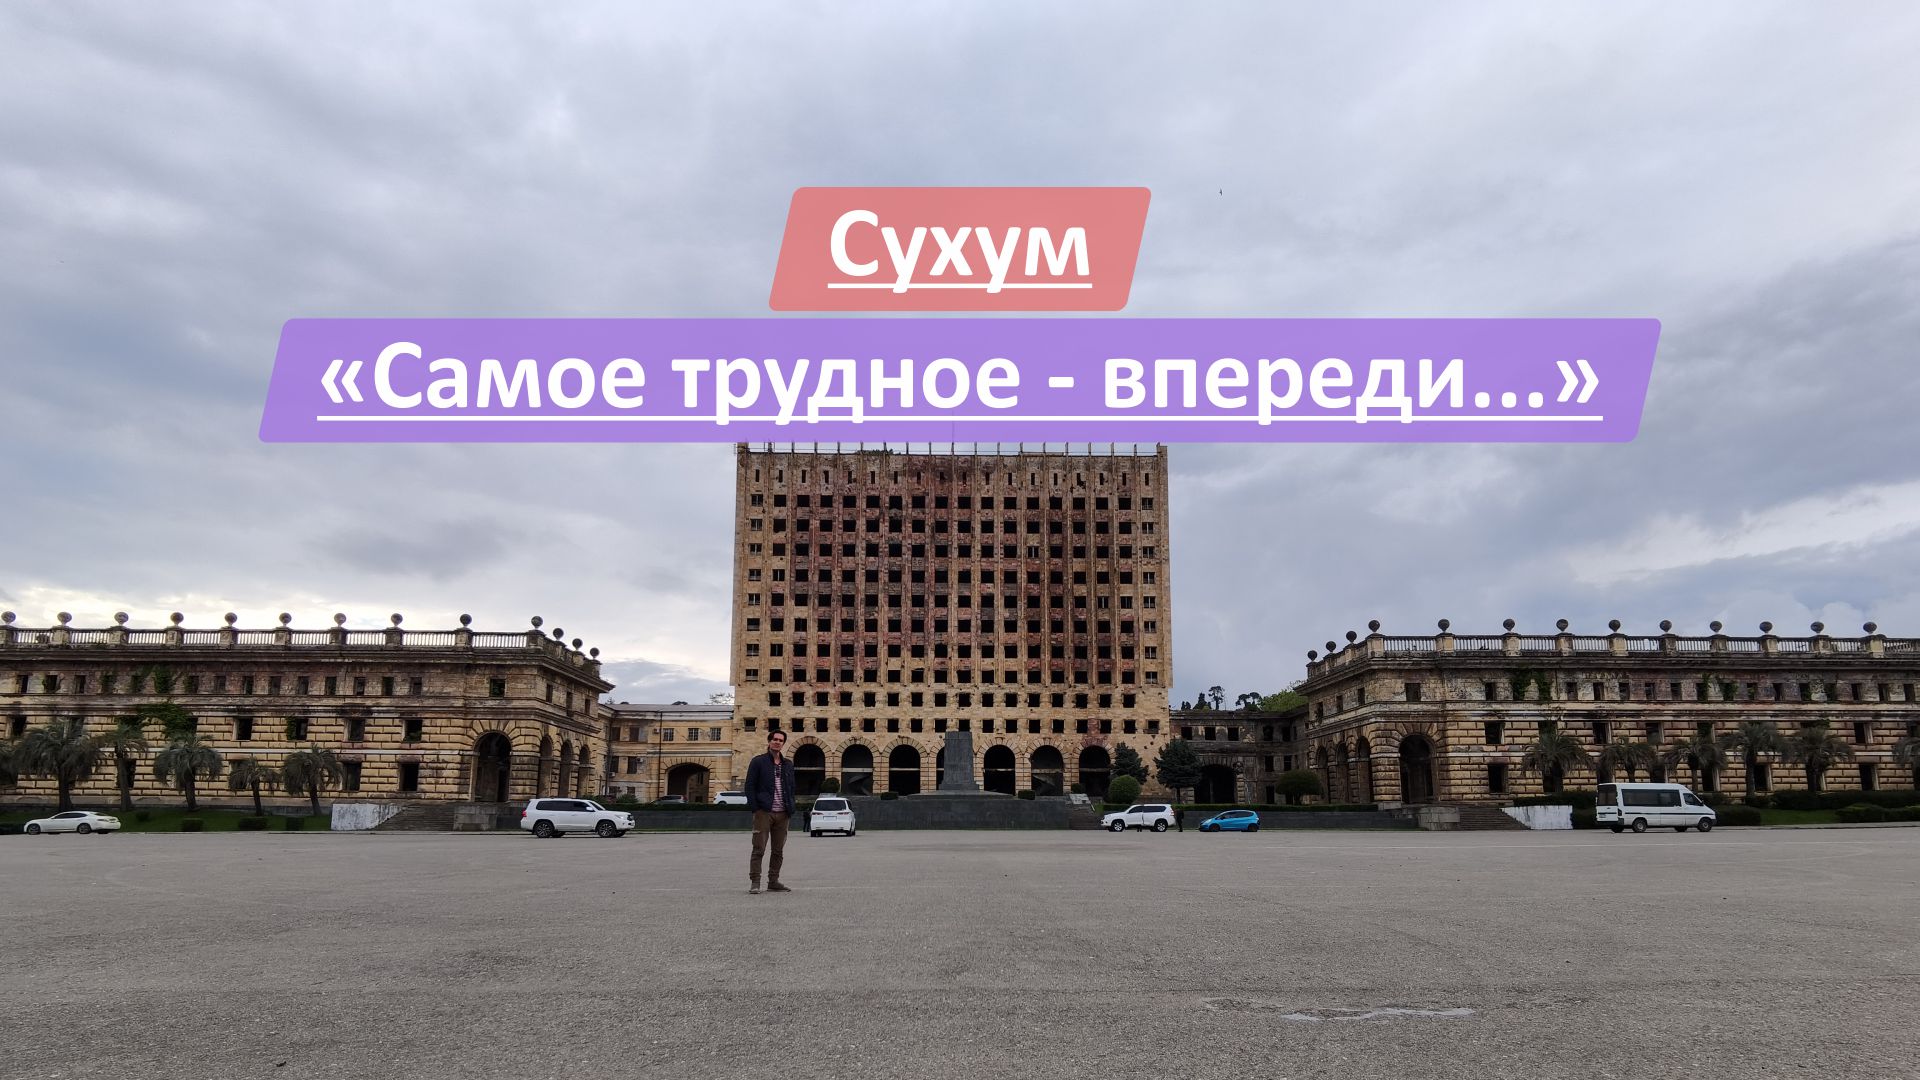 Сухум, Республика Абхазия | "Самое страшное, я надеюсь, у нас позади, самое трудное - впереди..."